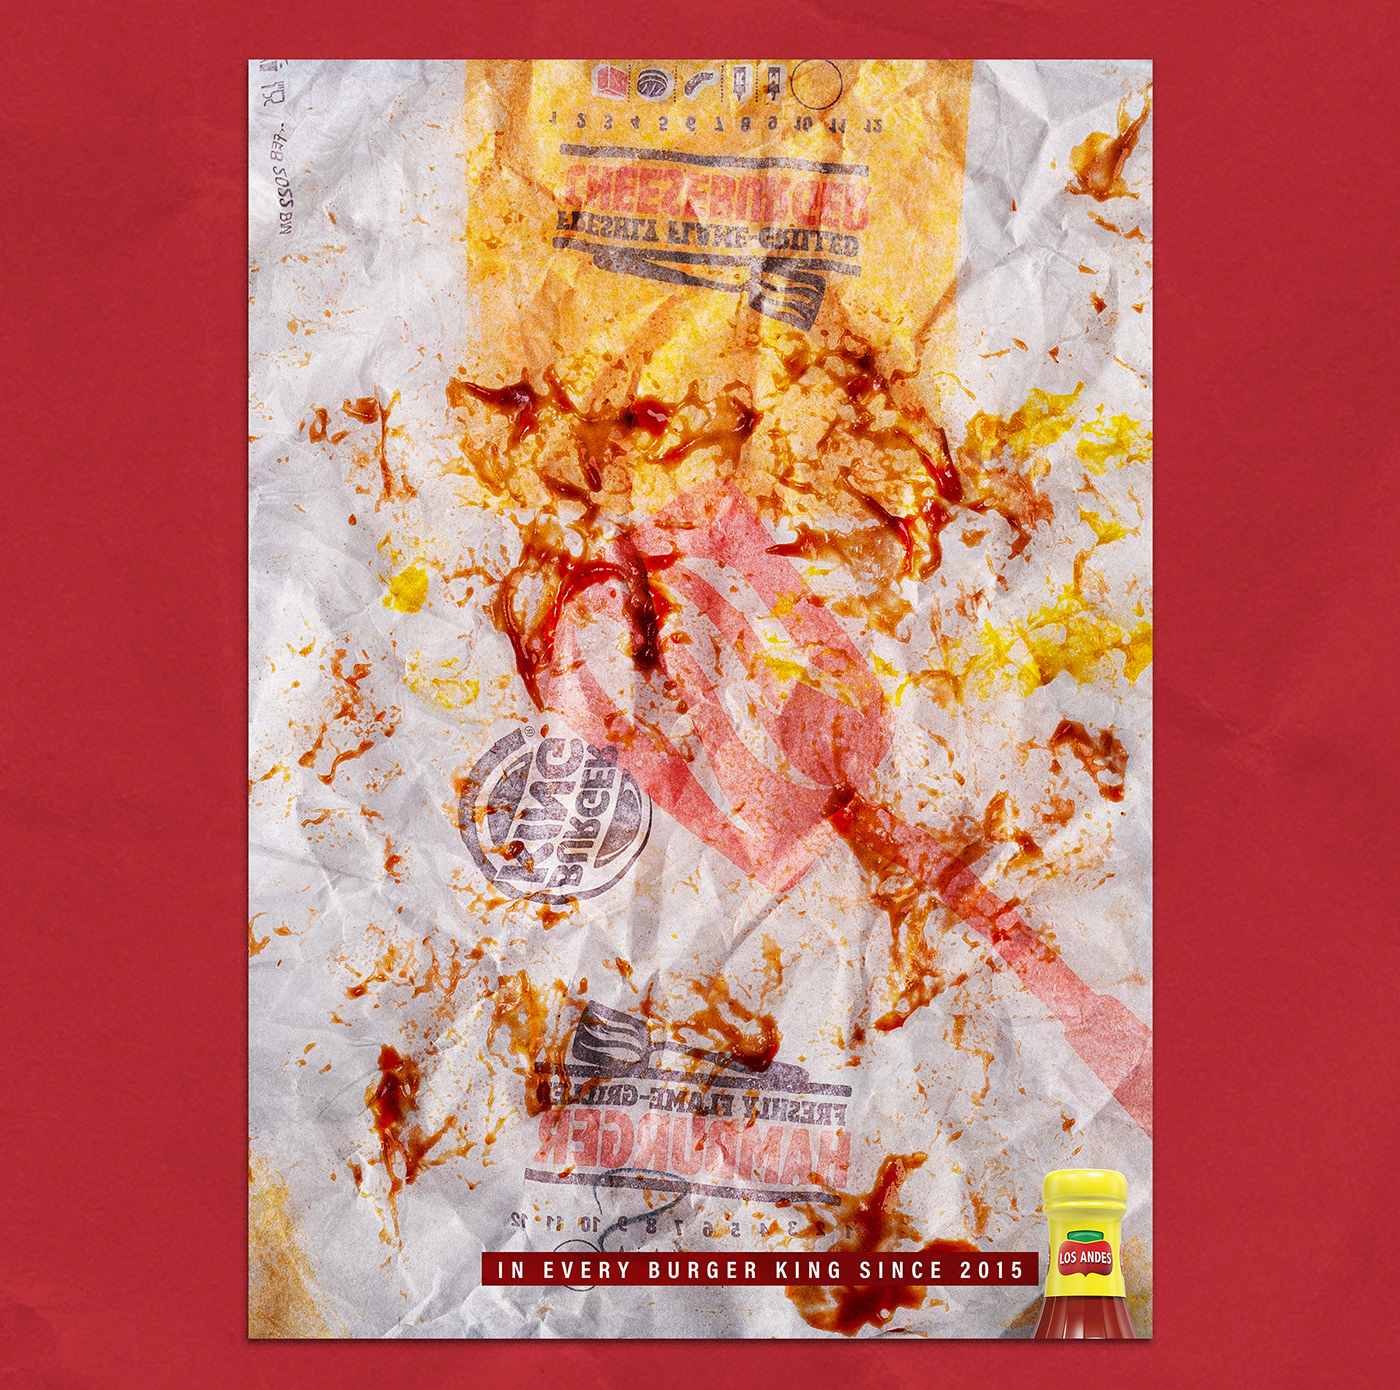 ad Advertising  Burger King Ecuador los andes mcdonald's photo print sauce